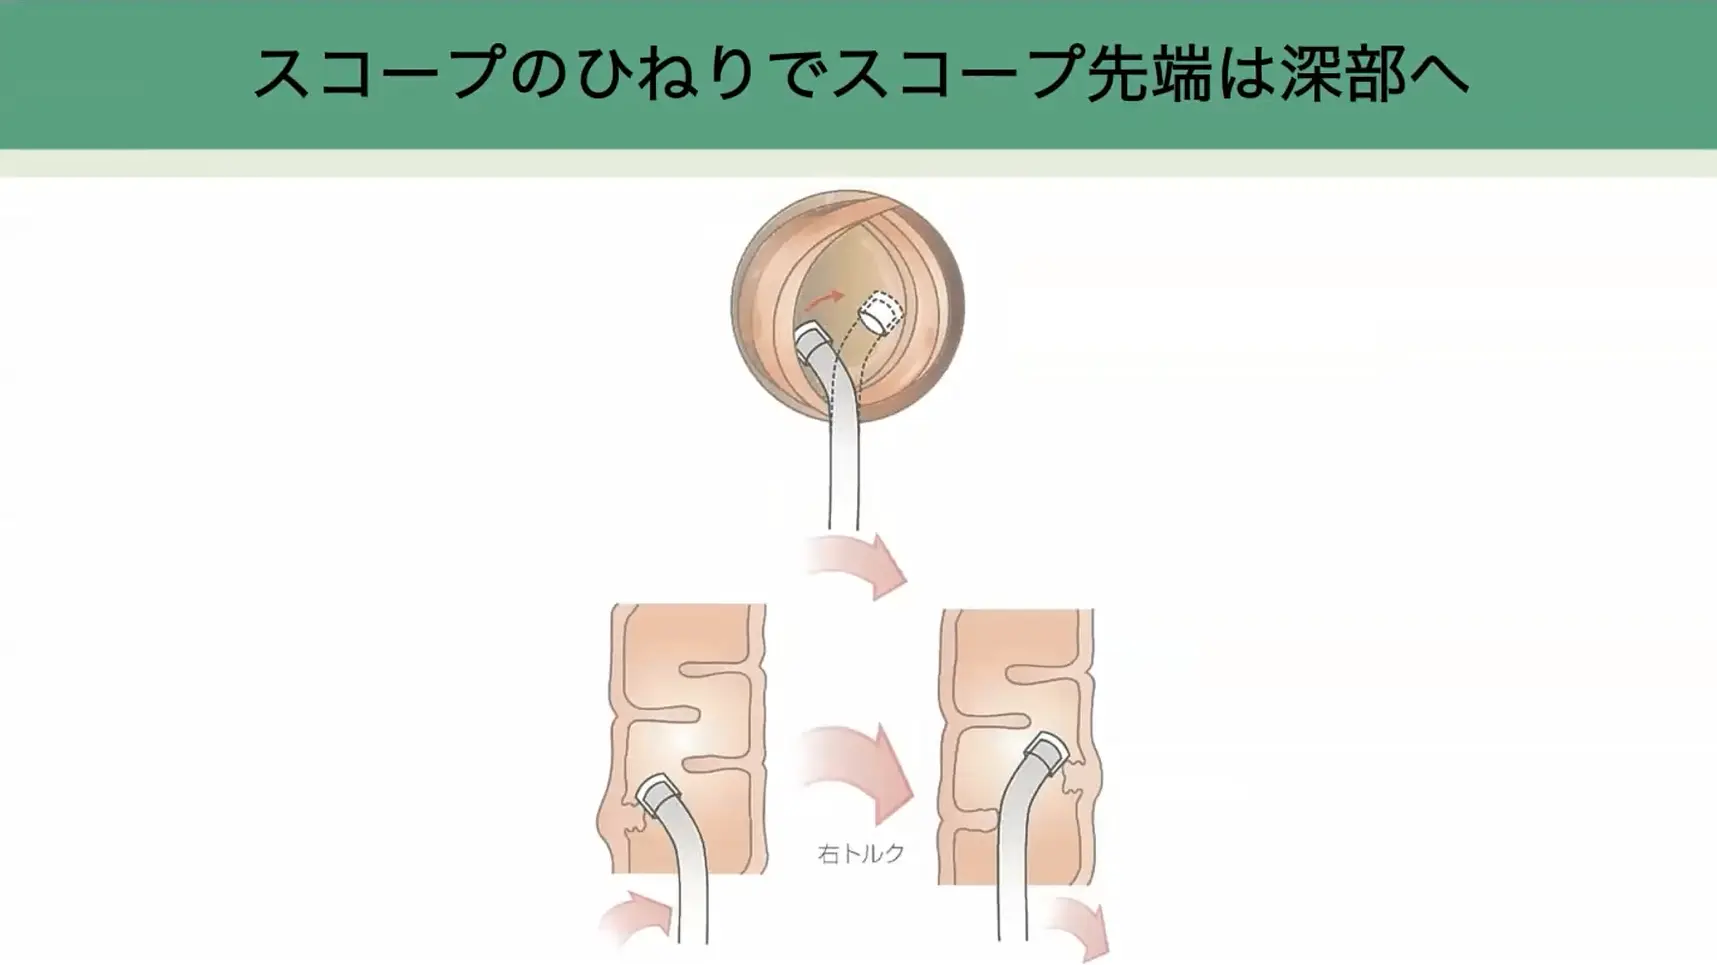 大腸内視鏡の挿入法、動画でわかる“無痛”のコツ - ガストロAI media